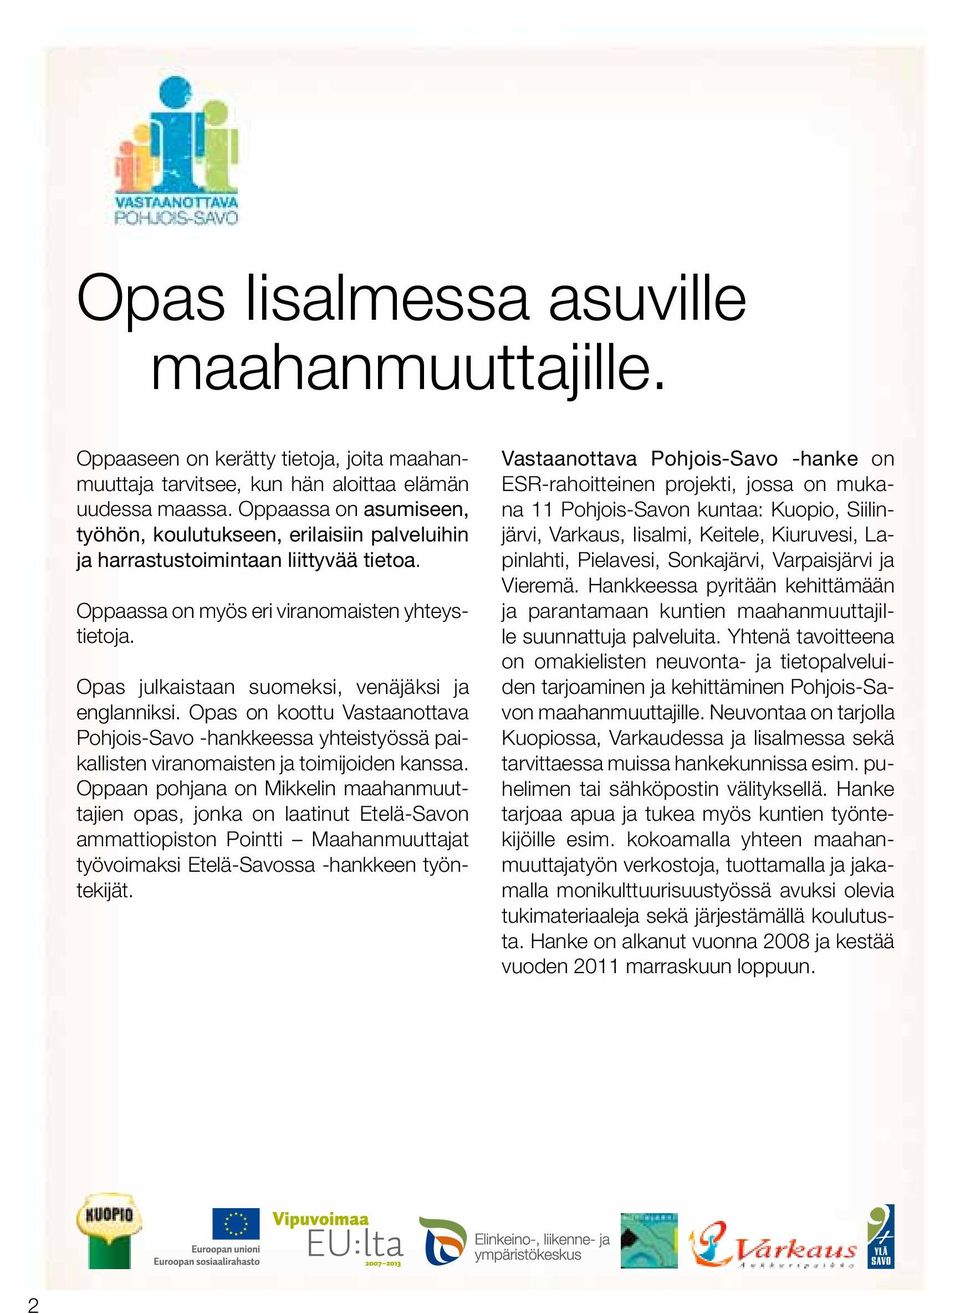 Opas julkaistaan suomeksi, venäjäksi ja englanniksi. Opas on koottu Vastaanottava Pohjois -Savo -hankkeessa yhteistyössä paikallisten viranomaisten ja toimijoiden kanssa.